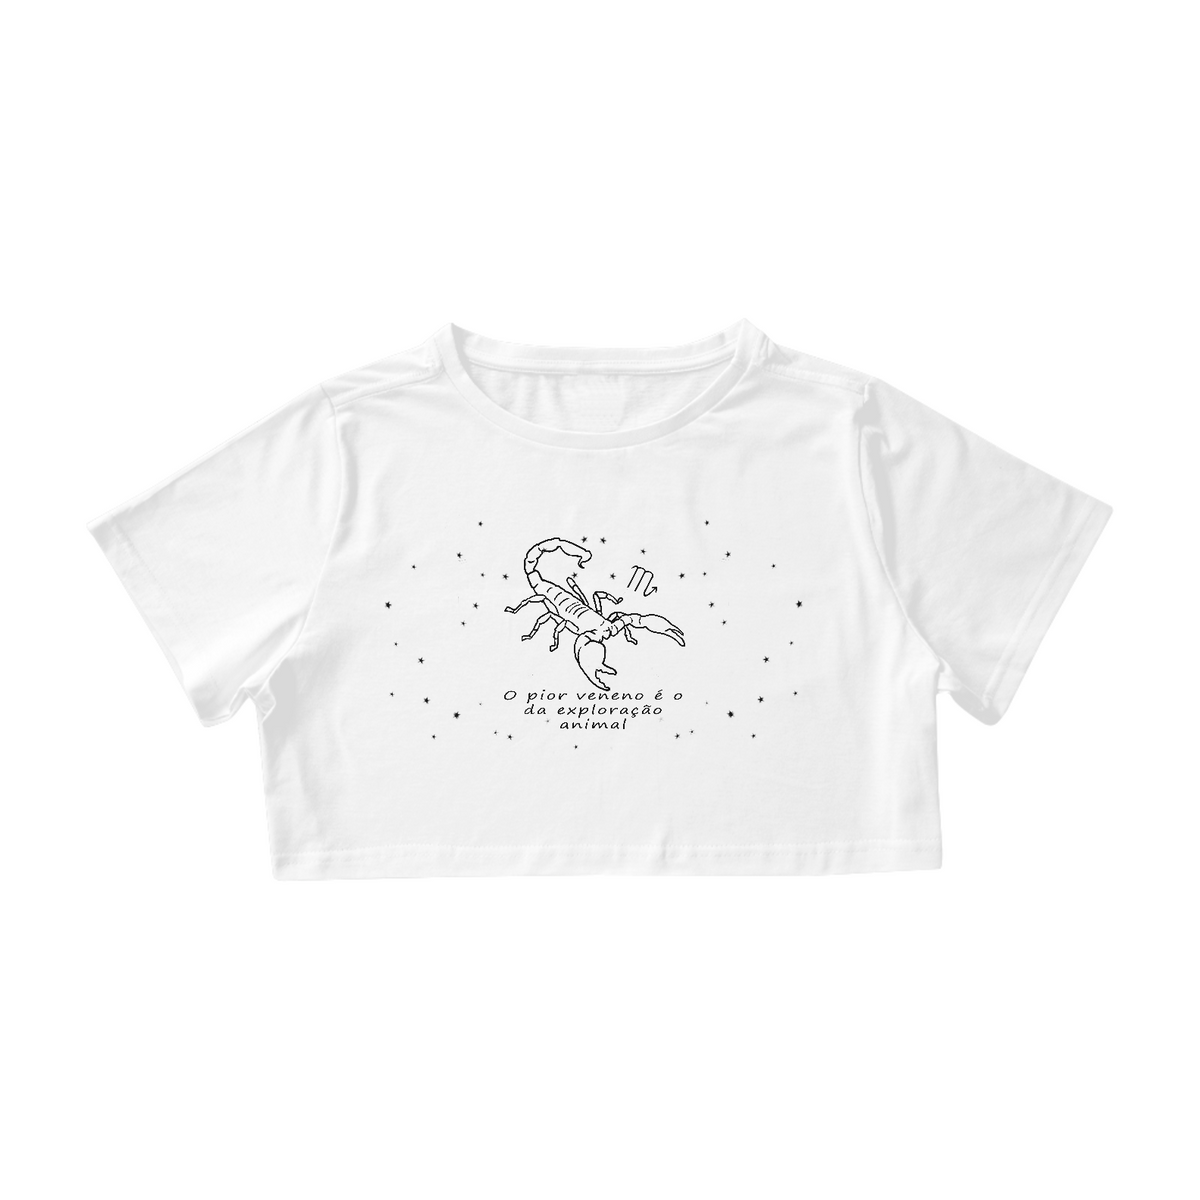 Nome do produto: Camiseta Cropped | Escorpião | O pior veneno é o da exploração animal | P&B